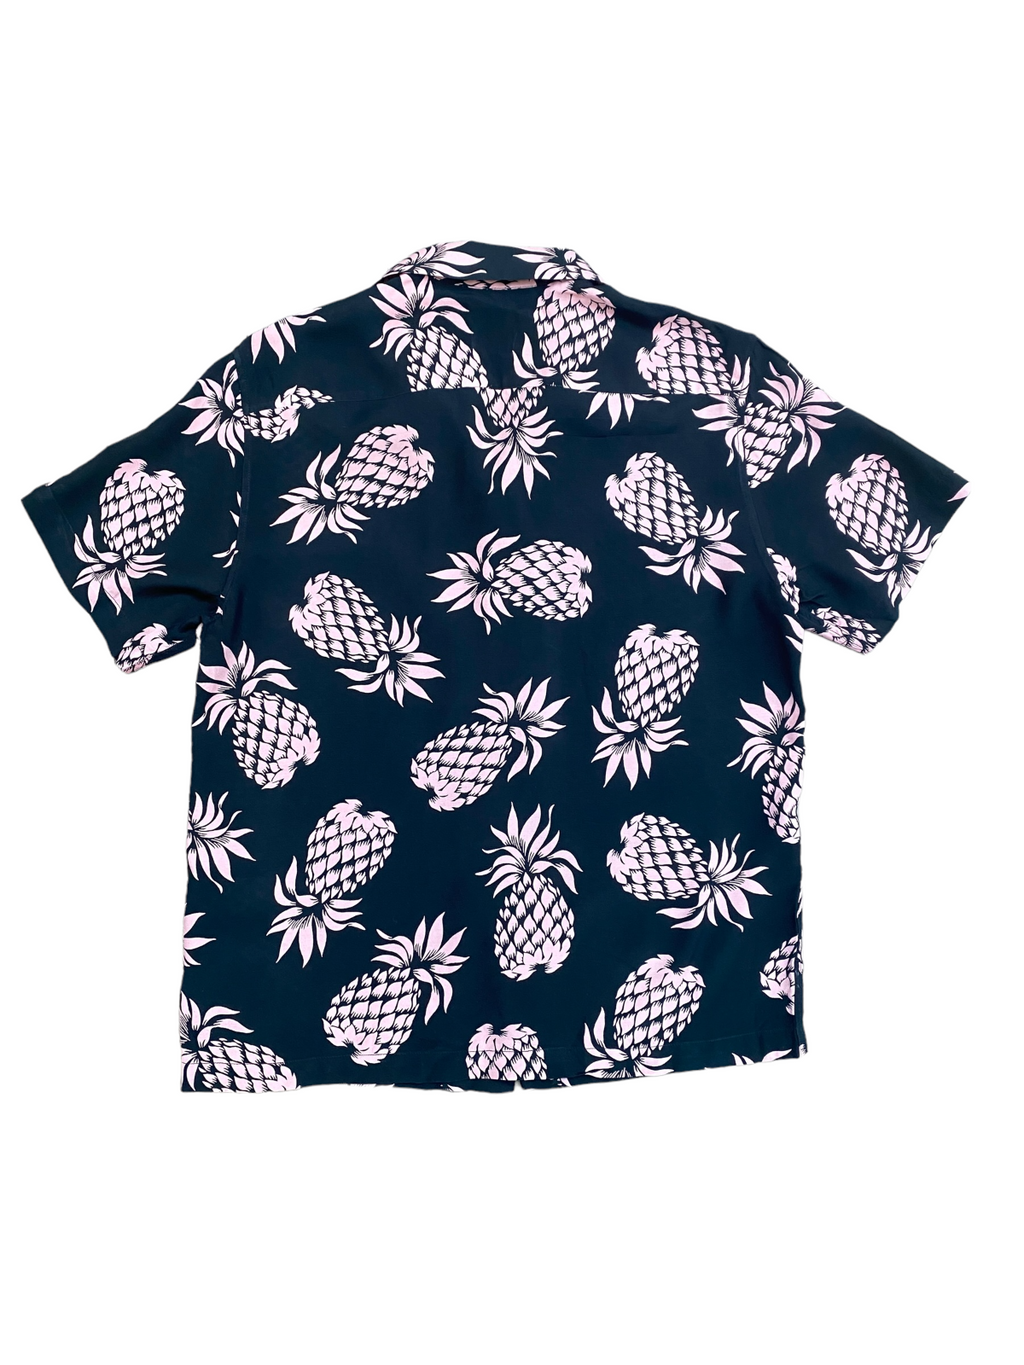 Black / Pink Hawaiian Floral  Short Sleeves Shirt